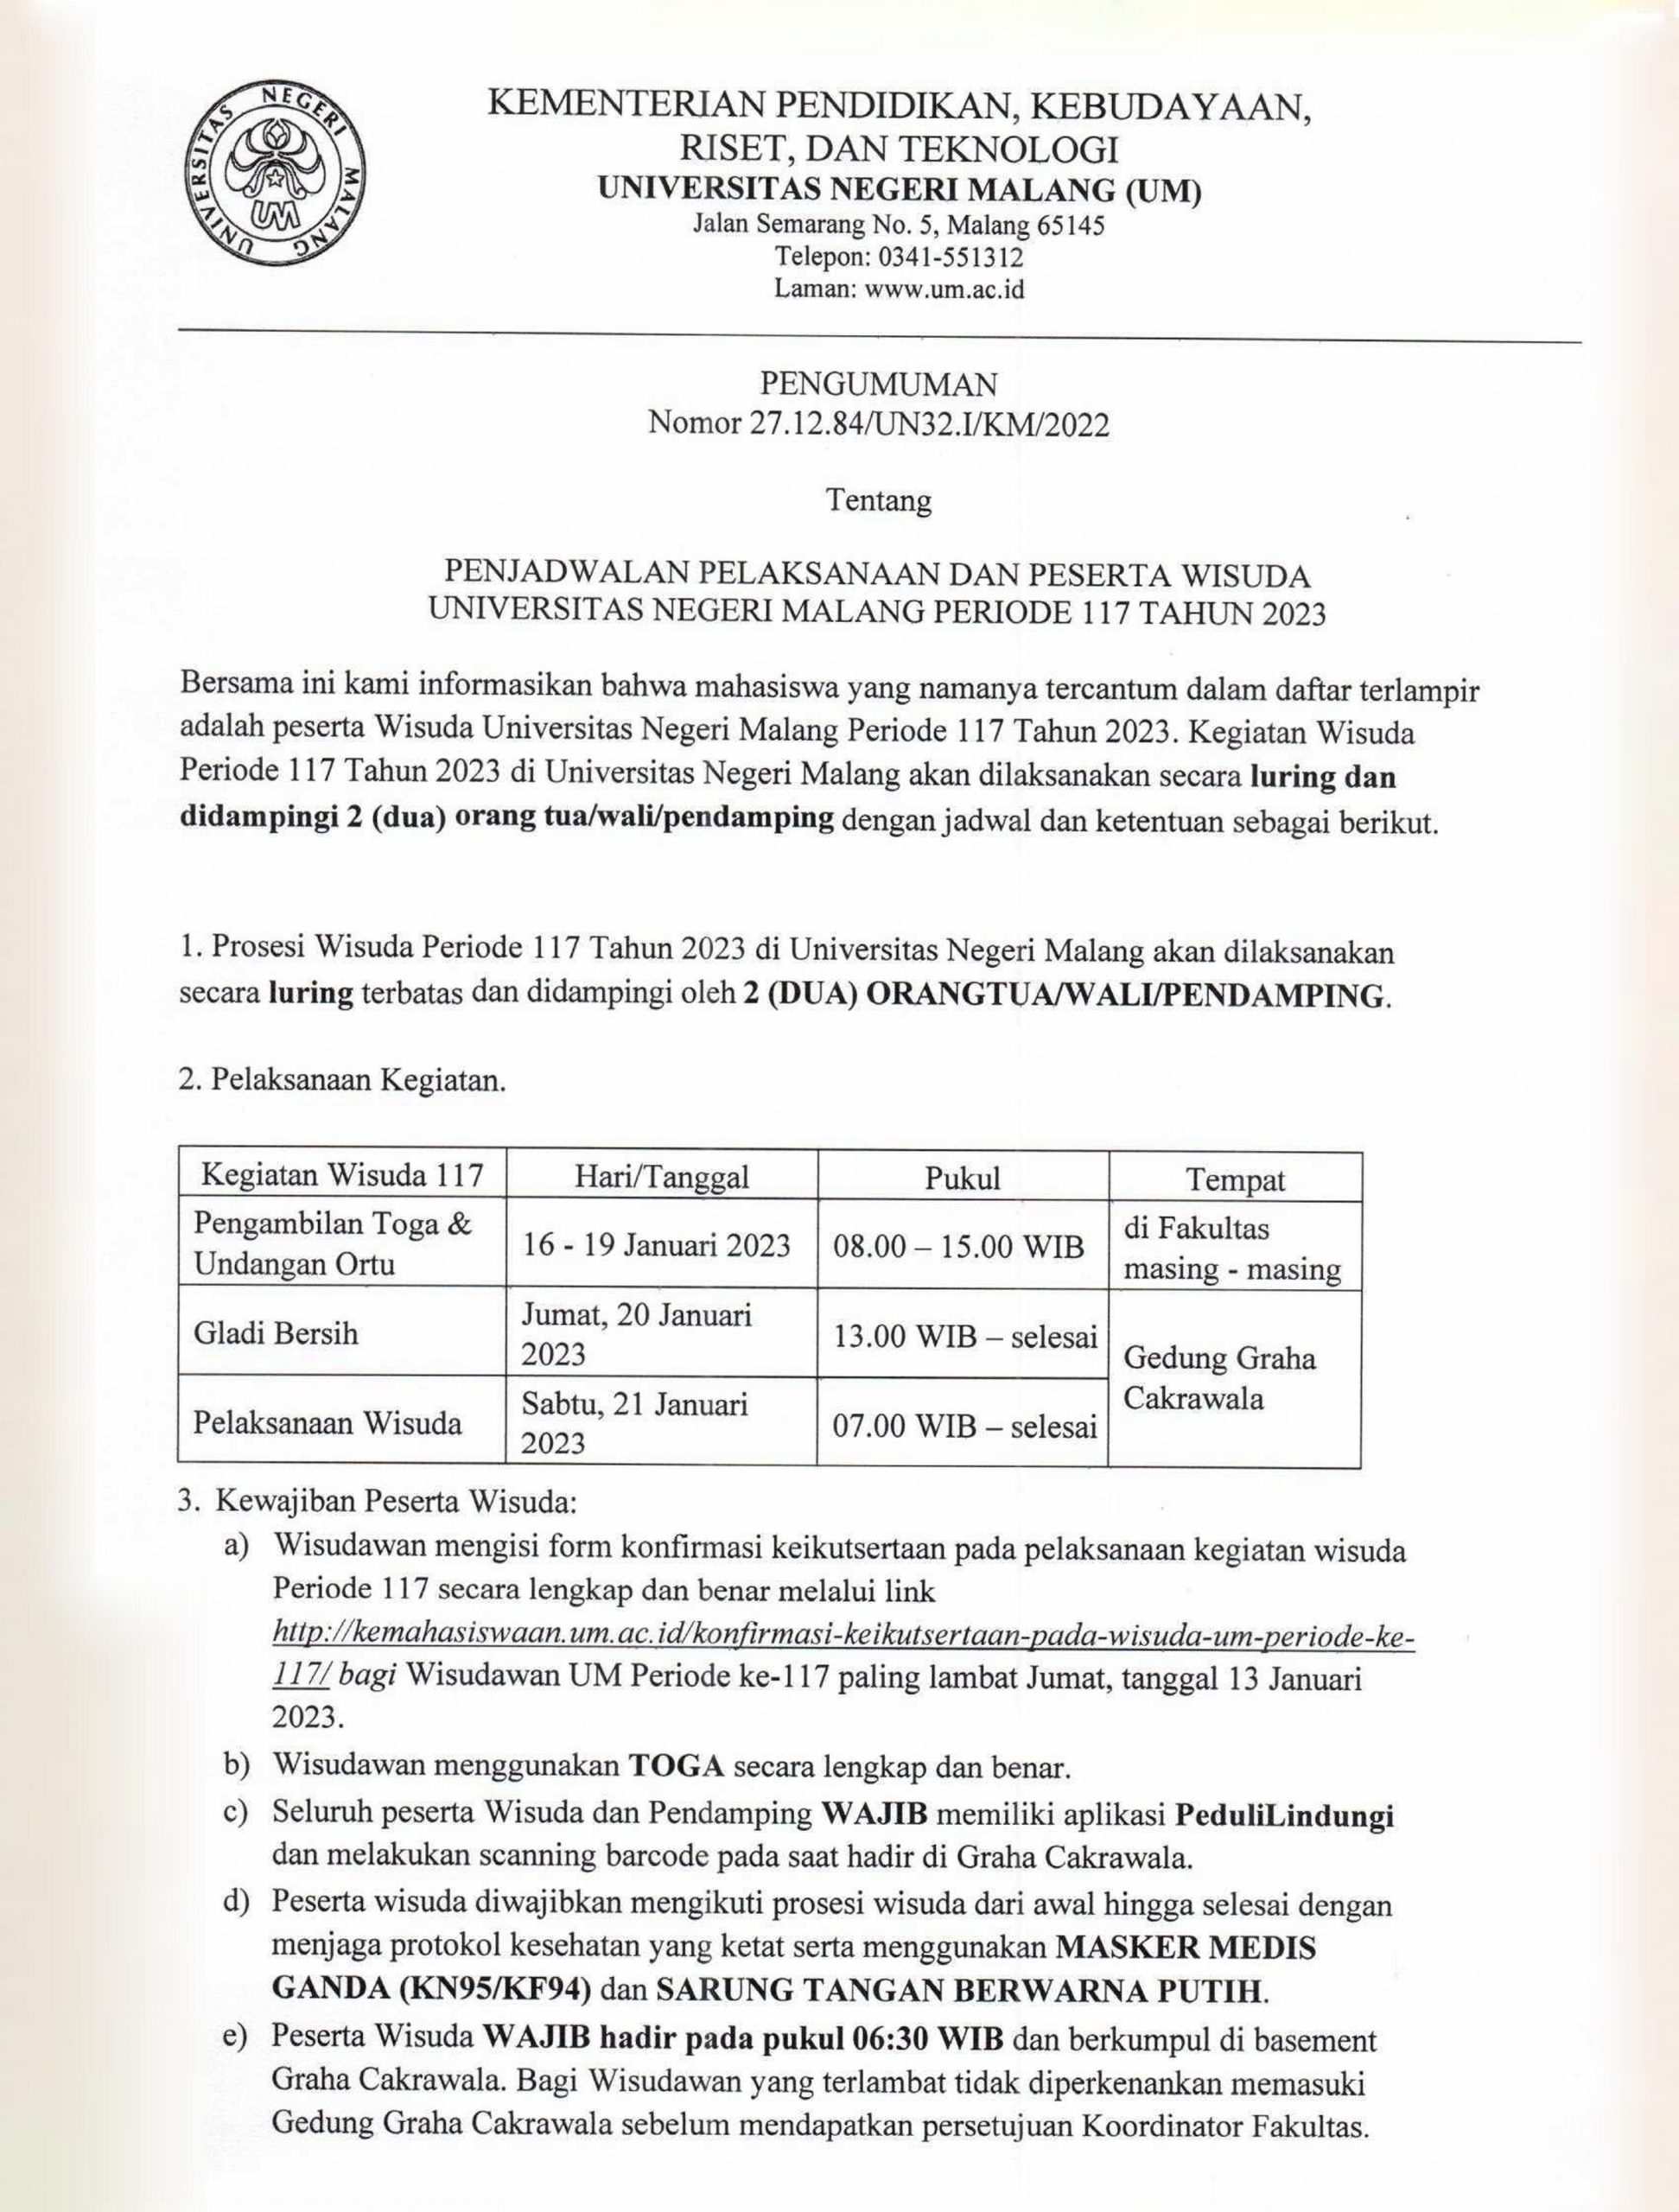 Pelaksanaan Wisuda Universitas Negeri Malang Periode 117 Tahun 2023